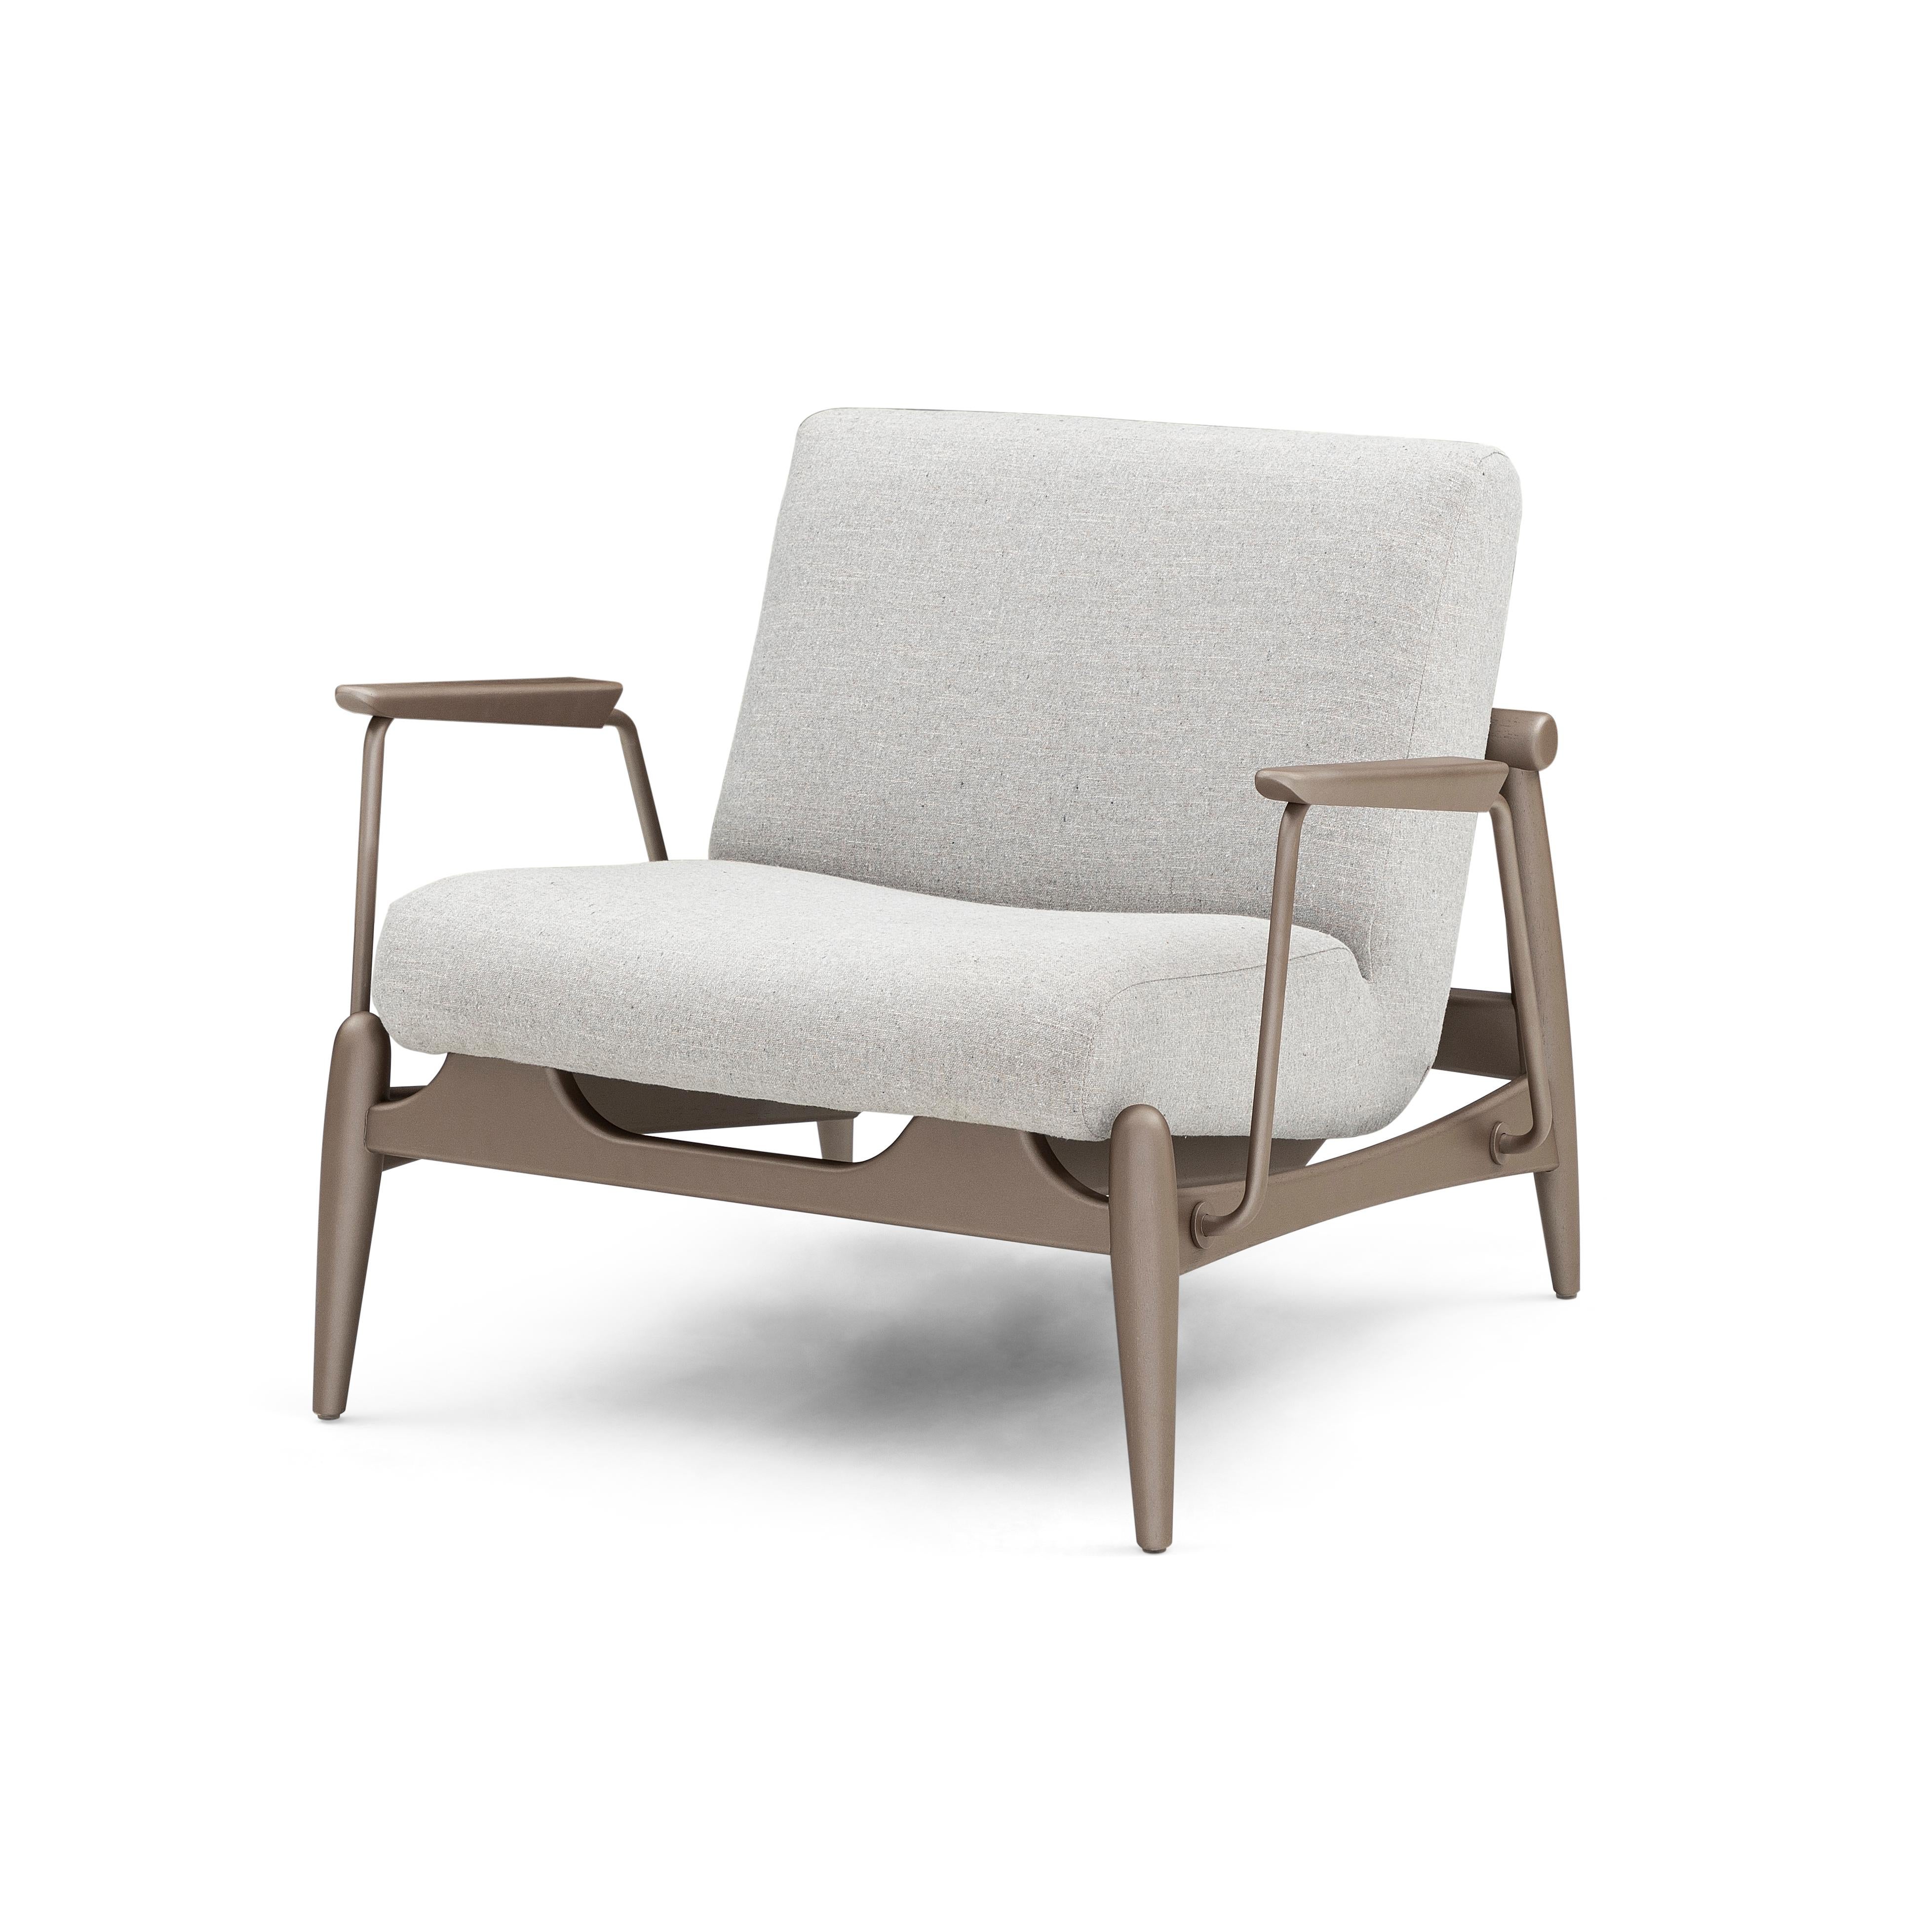 Le fauteuil Win présente des garnitures métalliques avec un cadre en finition bois marron, enveloppé d'un magnifique tissu gris clair. Notre incroyable équipe de design Uultis a créé ce fauteuil pour votre confort et votre soutien, que vous pouvez